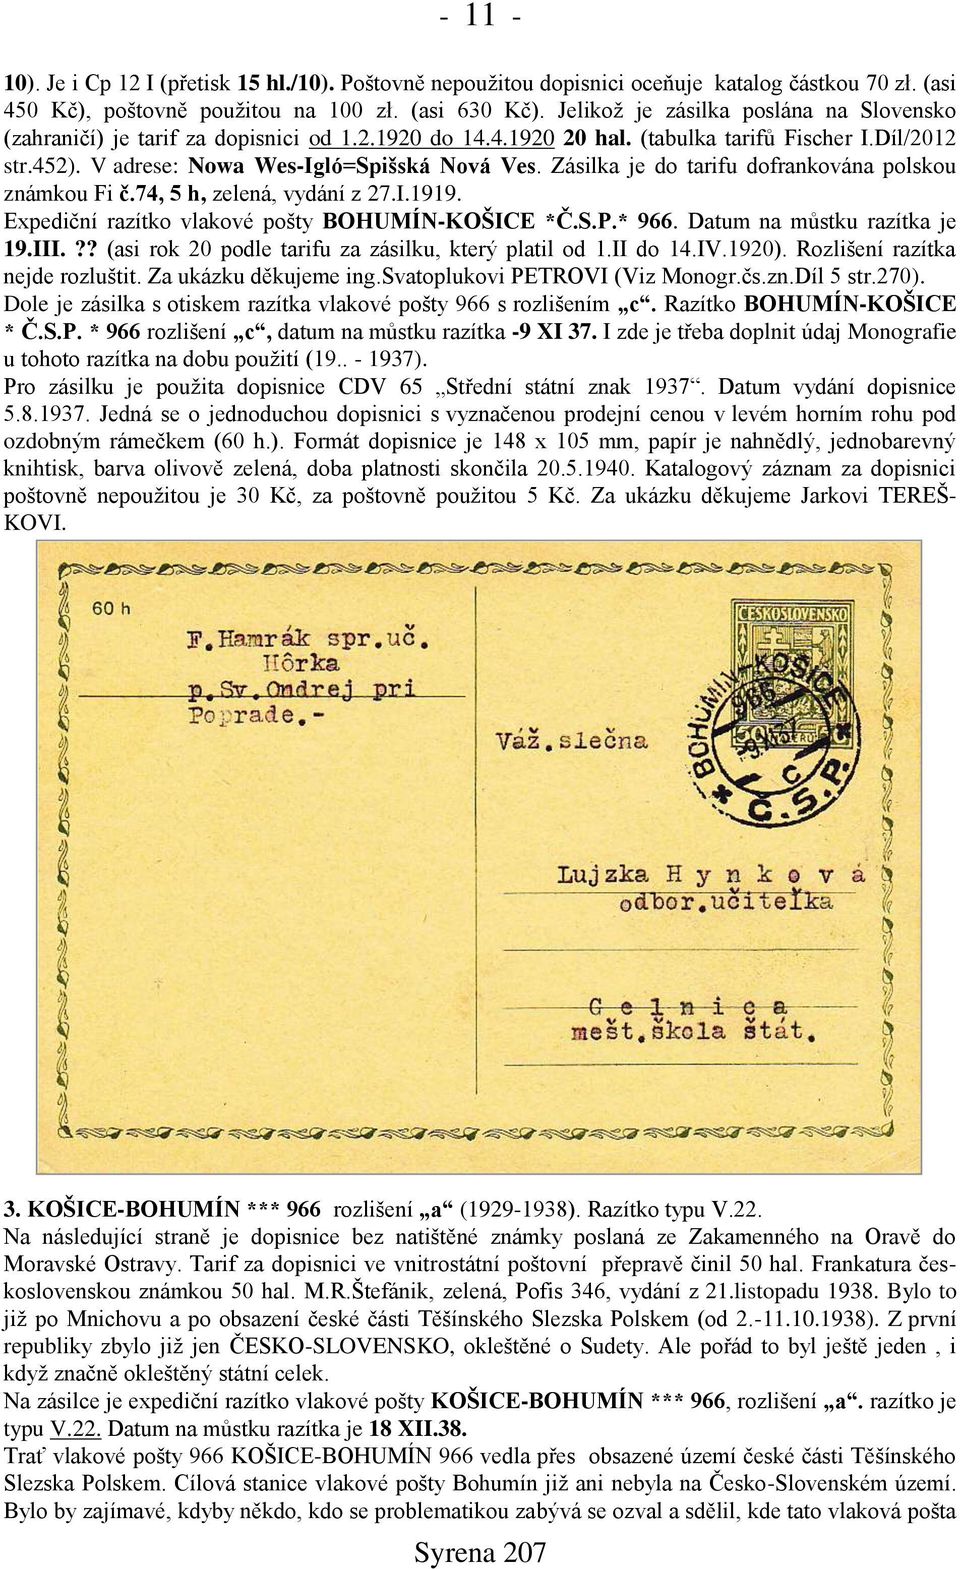 Zásilka je do tarifu dofrankována polskou známkou Fi č.74, 5 h, zelená, vydání z 27.I.1919. Expediční razítko vlakové pošty BOHUMÍN-KOŠICE *Č.S.P.* 966. Datum na můstku razítka je 19.III.